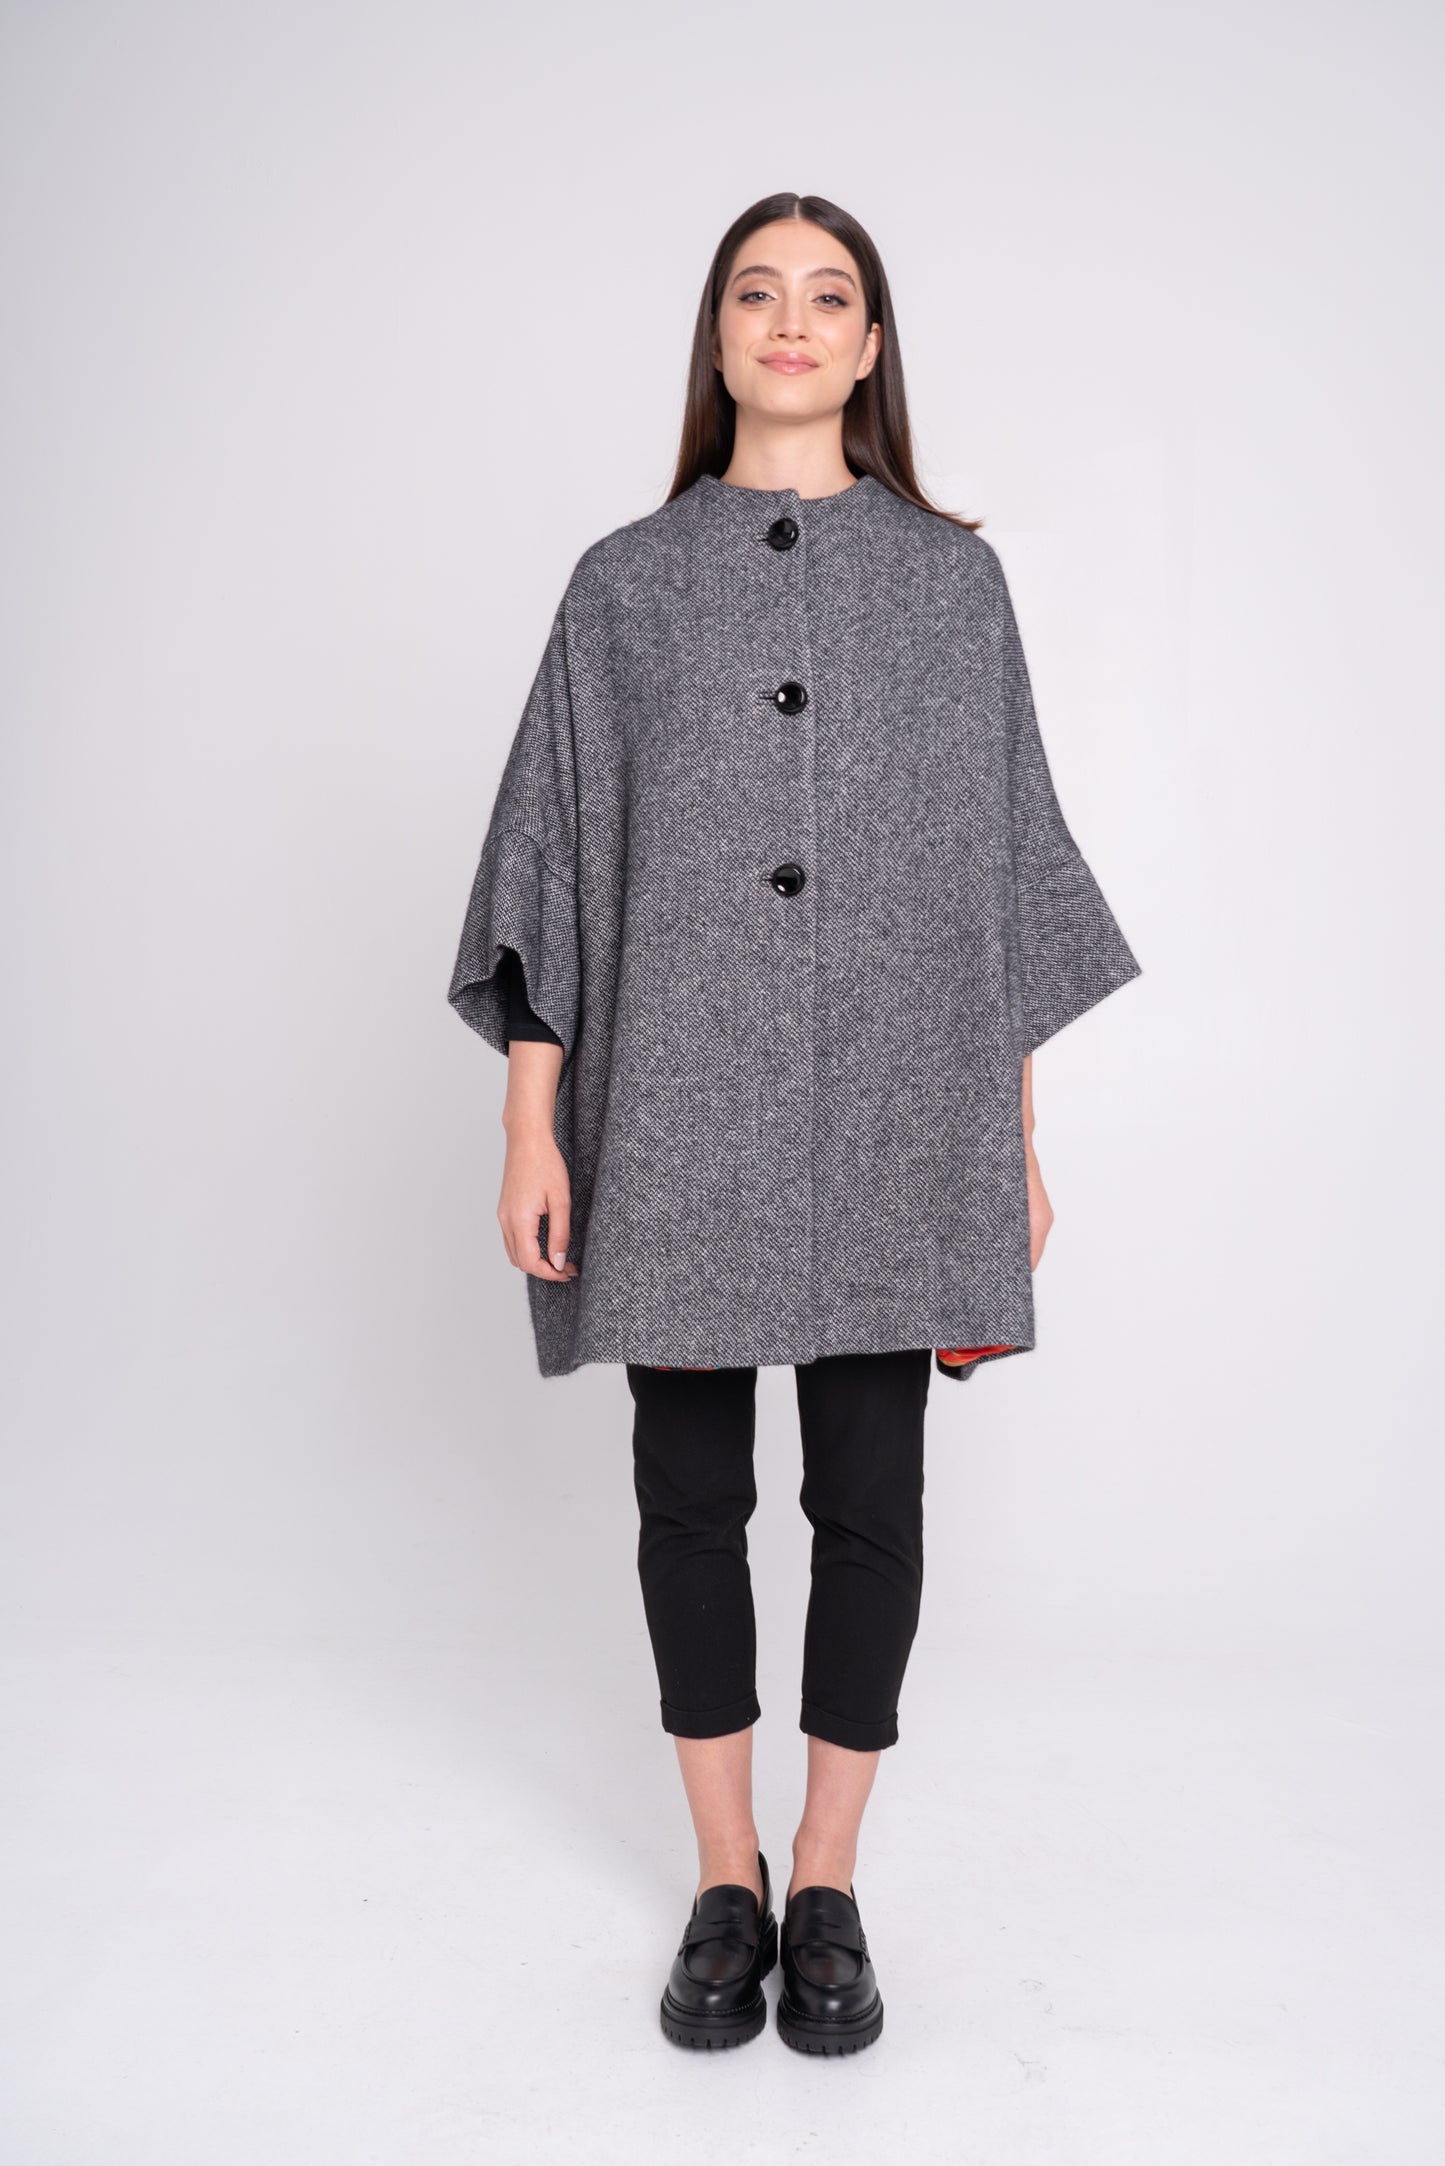 Calù • Cappotto in lana e cachemire puntinato nero